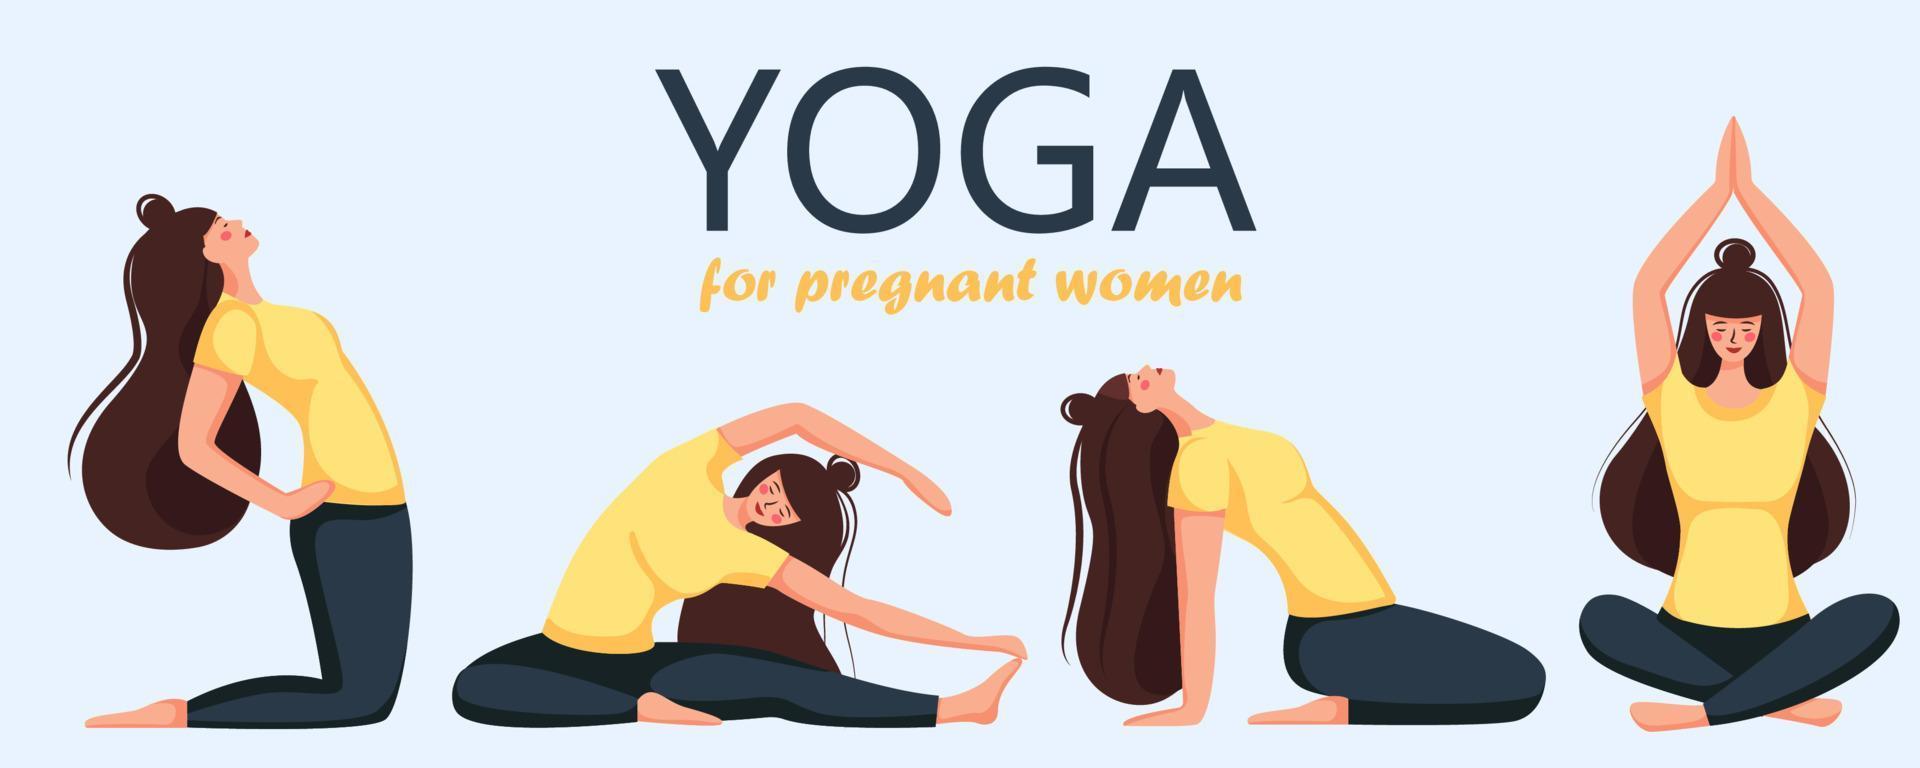 illustrazione concettuale per yoga, meditazione, relax, riposo, stile di vita sano. illustrazione vettoriale in stile cartone animato piatto